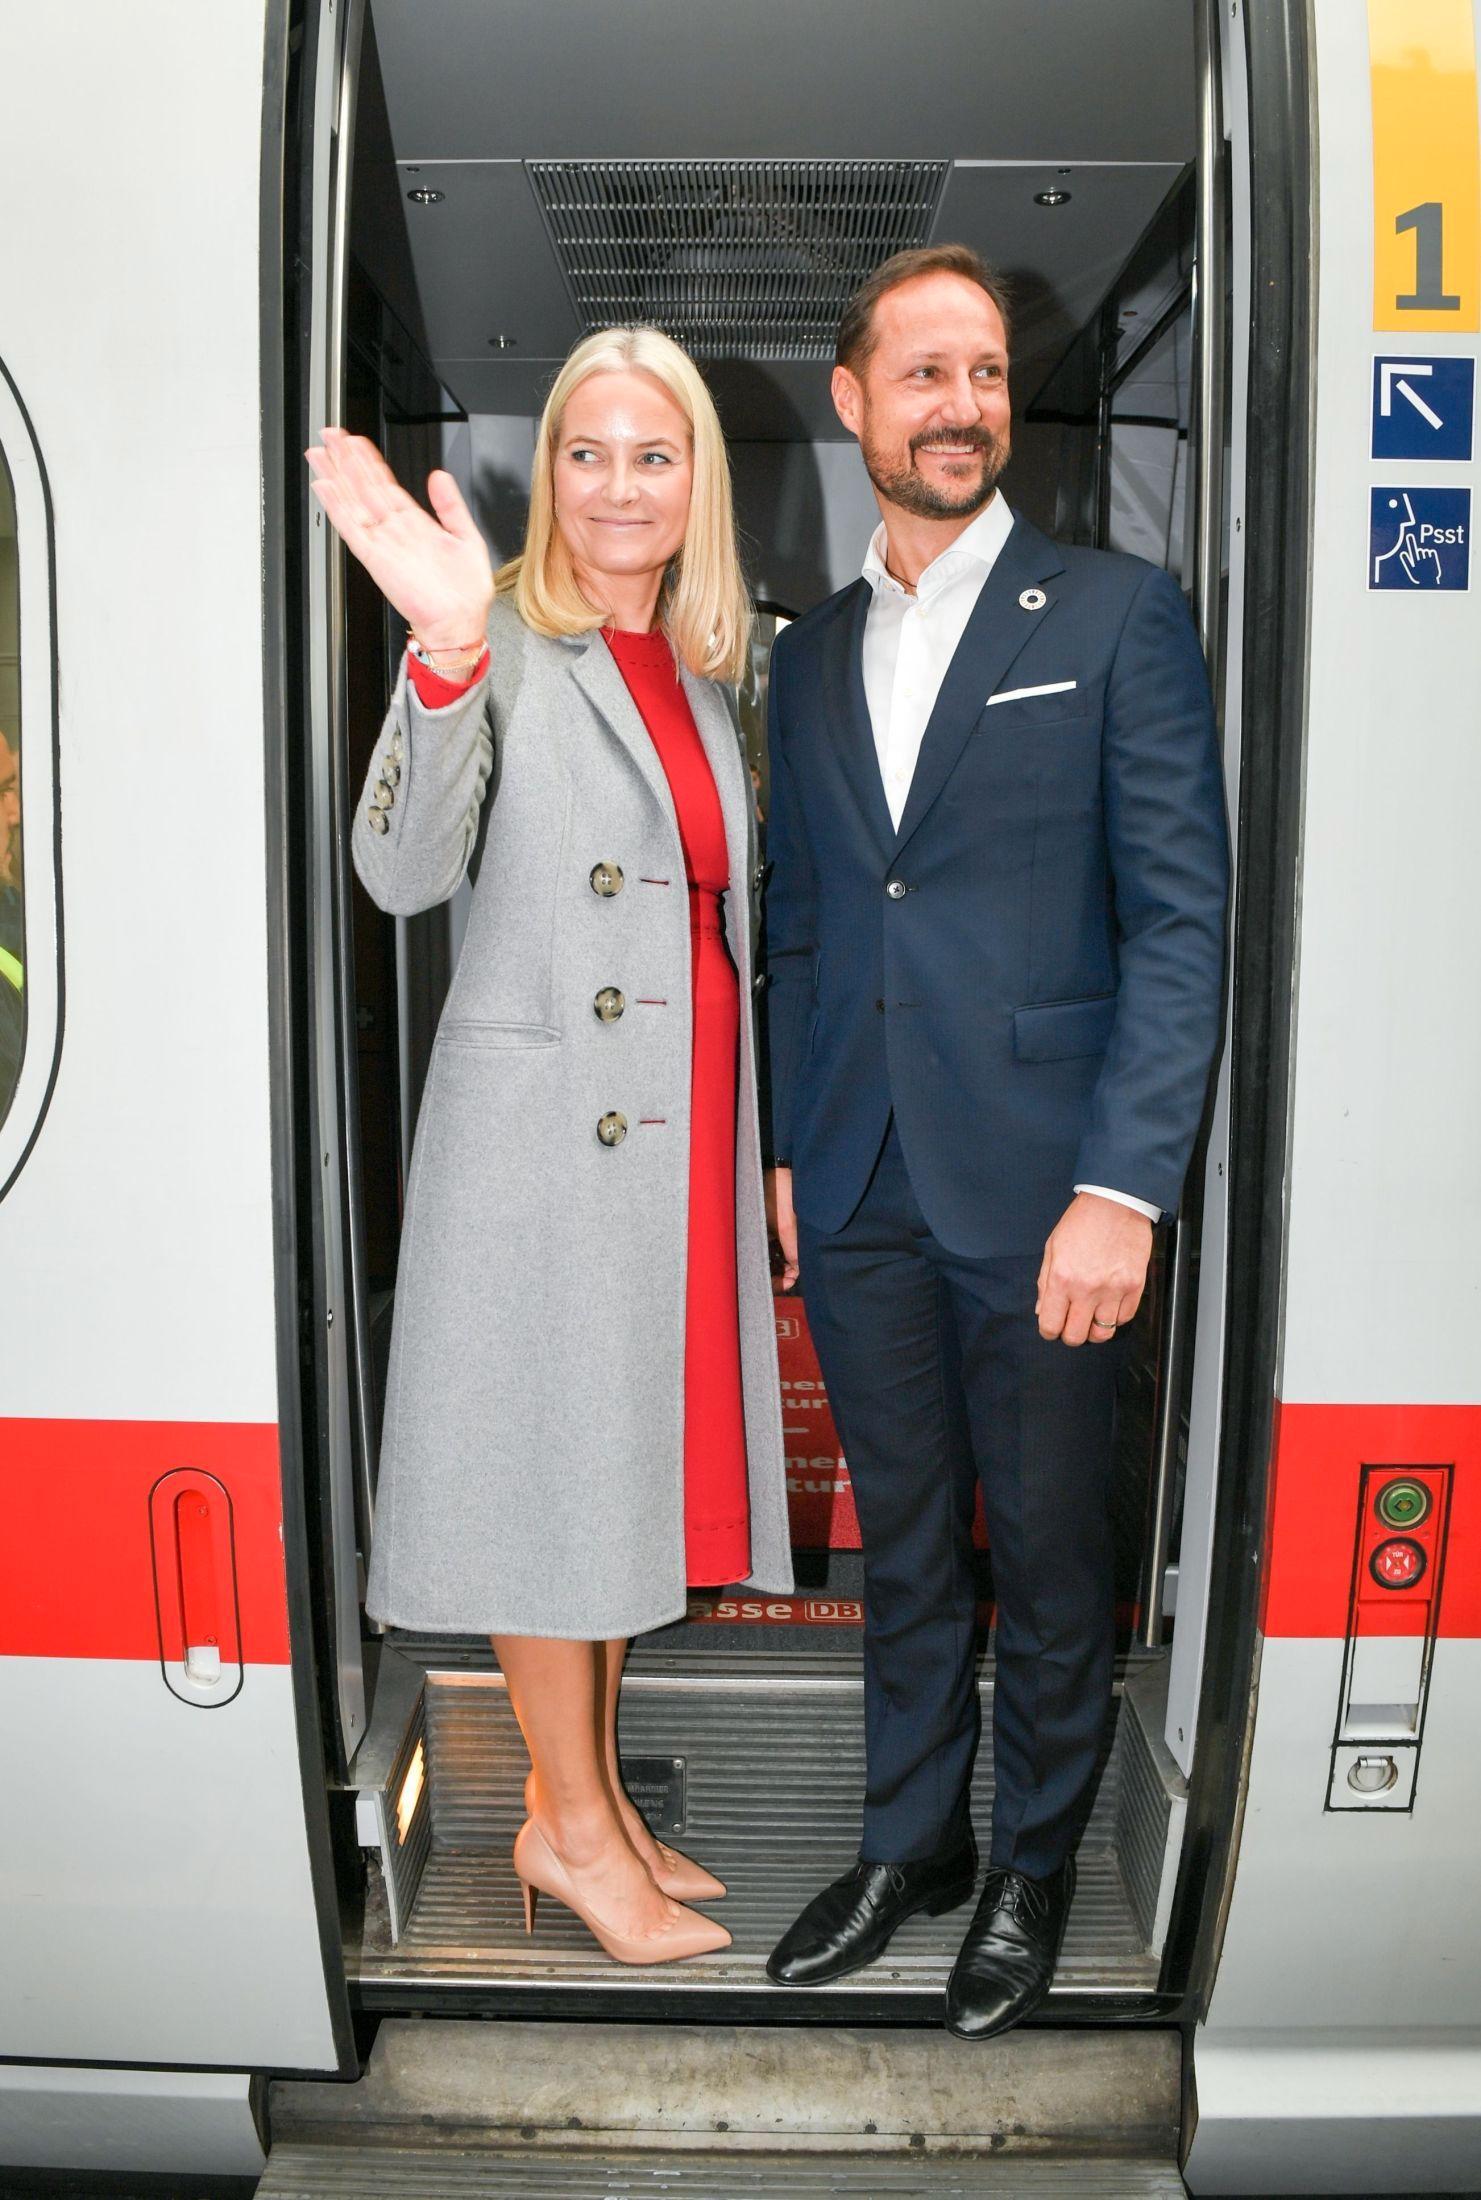 LITTERATURTOG: Mette-Marit og Haakon har toget rundt i Tyskland for å fremme norsk litteratur. Foto: Jens Kalaene / DPA / AFP